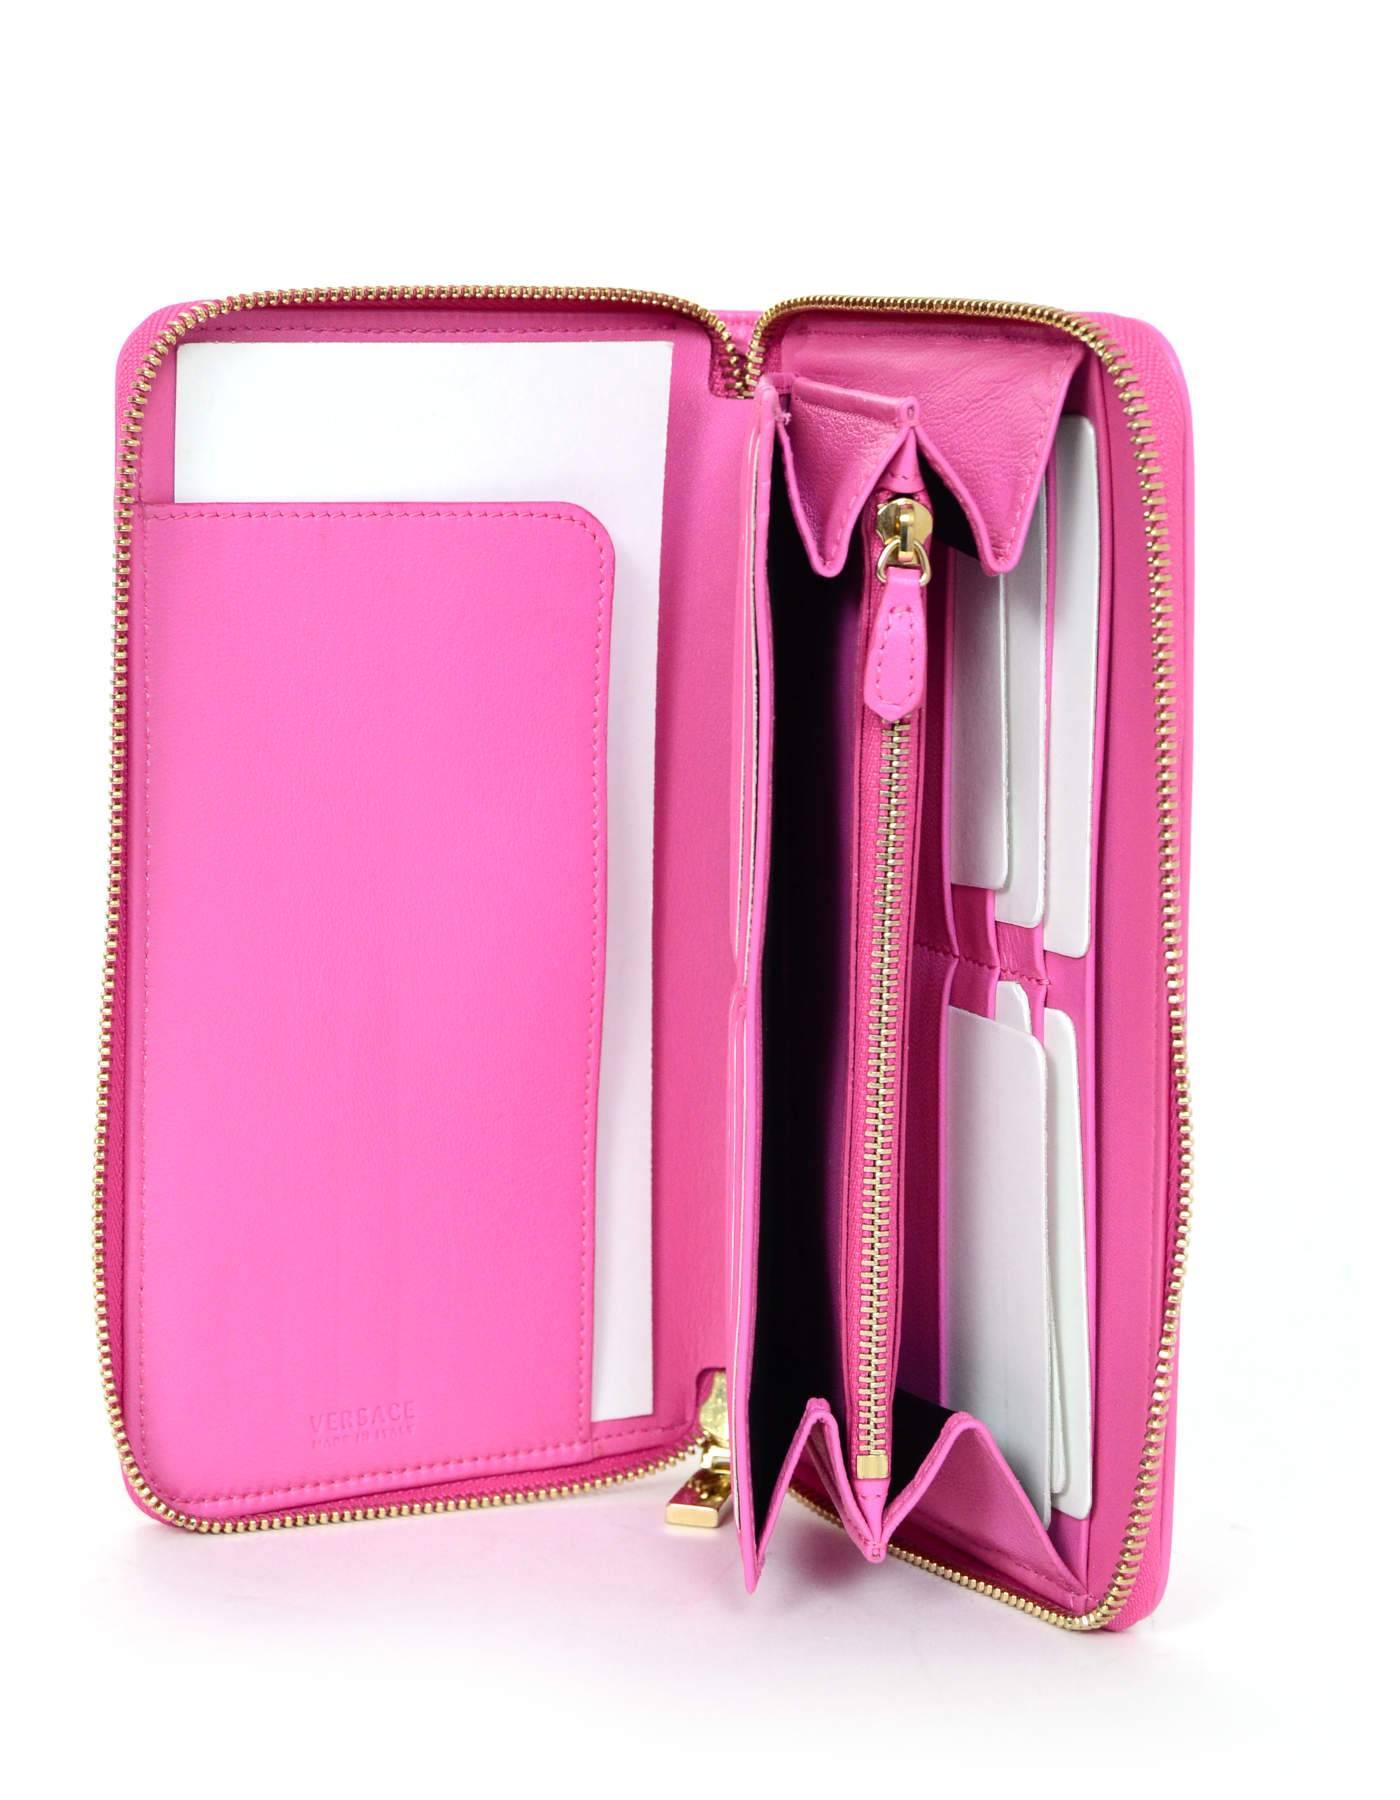 Versace Pink Leather Zip Around XL Wallet NIB  2